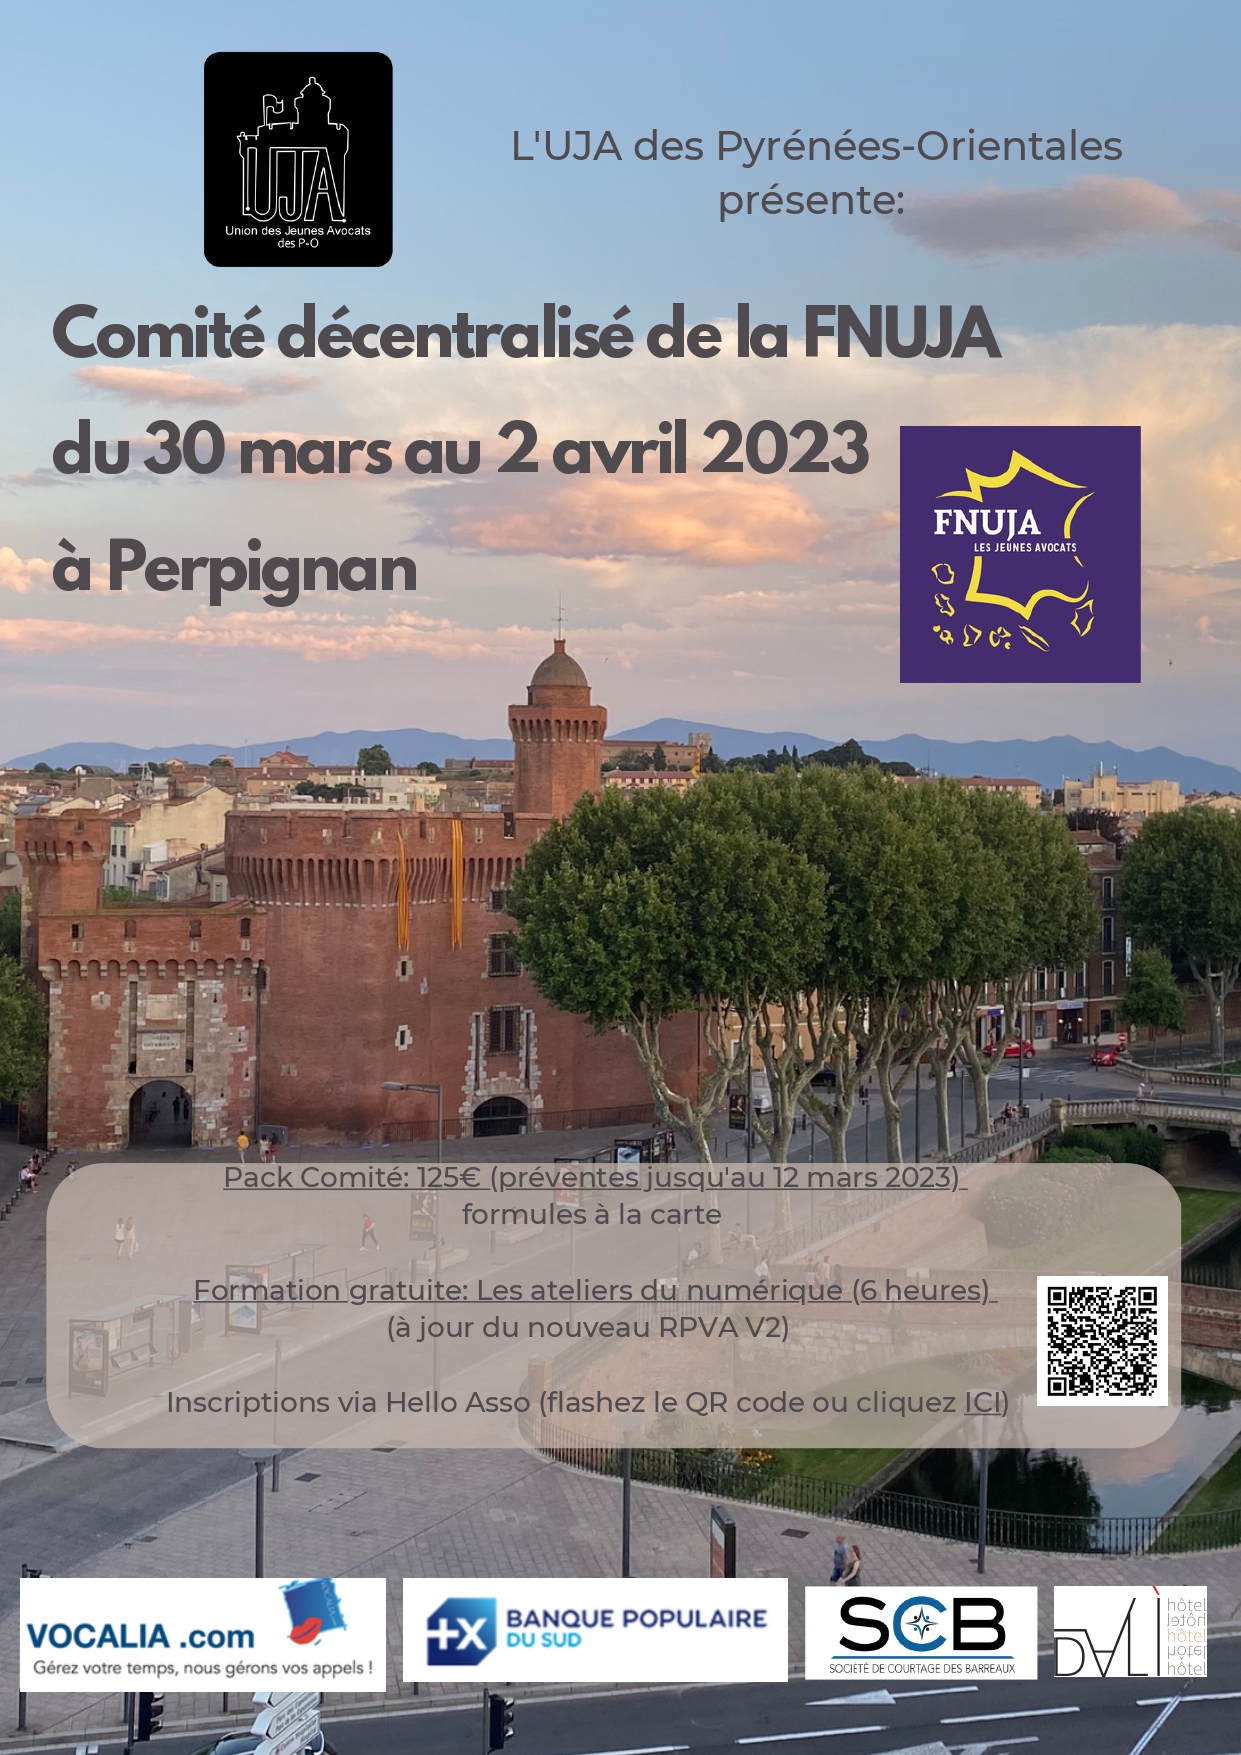 Comité décentralisé de la FNUJA à Perpignan du 30 mars au 2 avril 2023